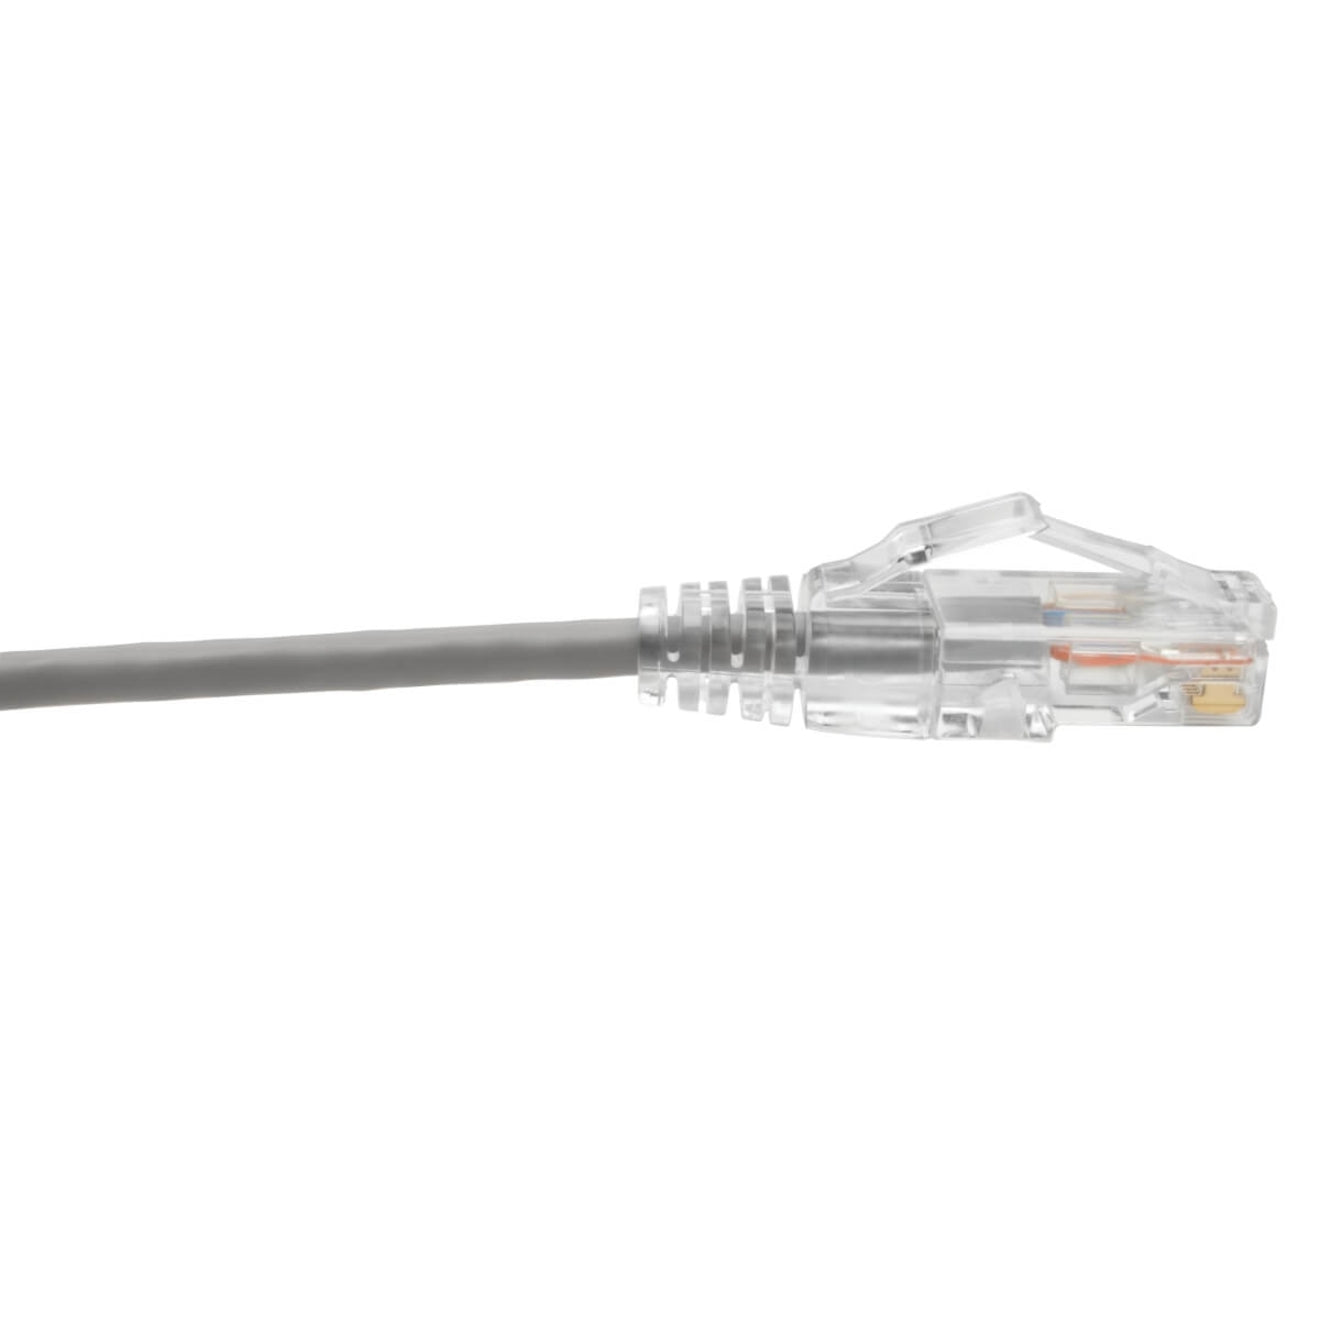 Tripp Lite N201-S6N-GY Cat6 UTP Patch Cable (RJ45) - M/M, Gigabit, Snagless, Molded, Slim, Gray, 6 in.